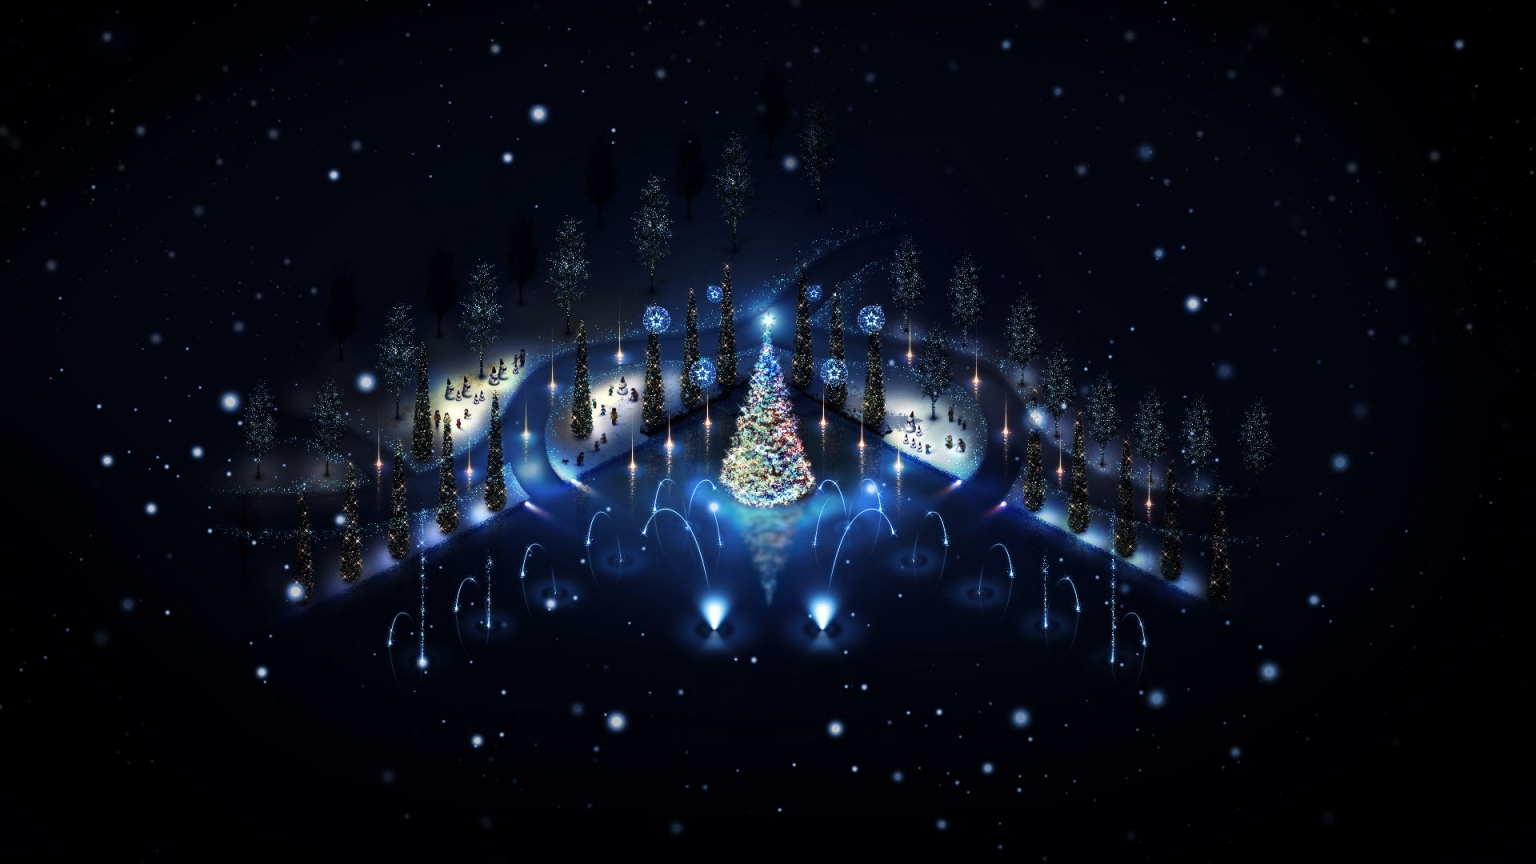 Lovely Christmas Trees Lighting for 1536 x 864 HDTV resolution